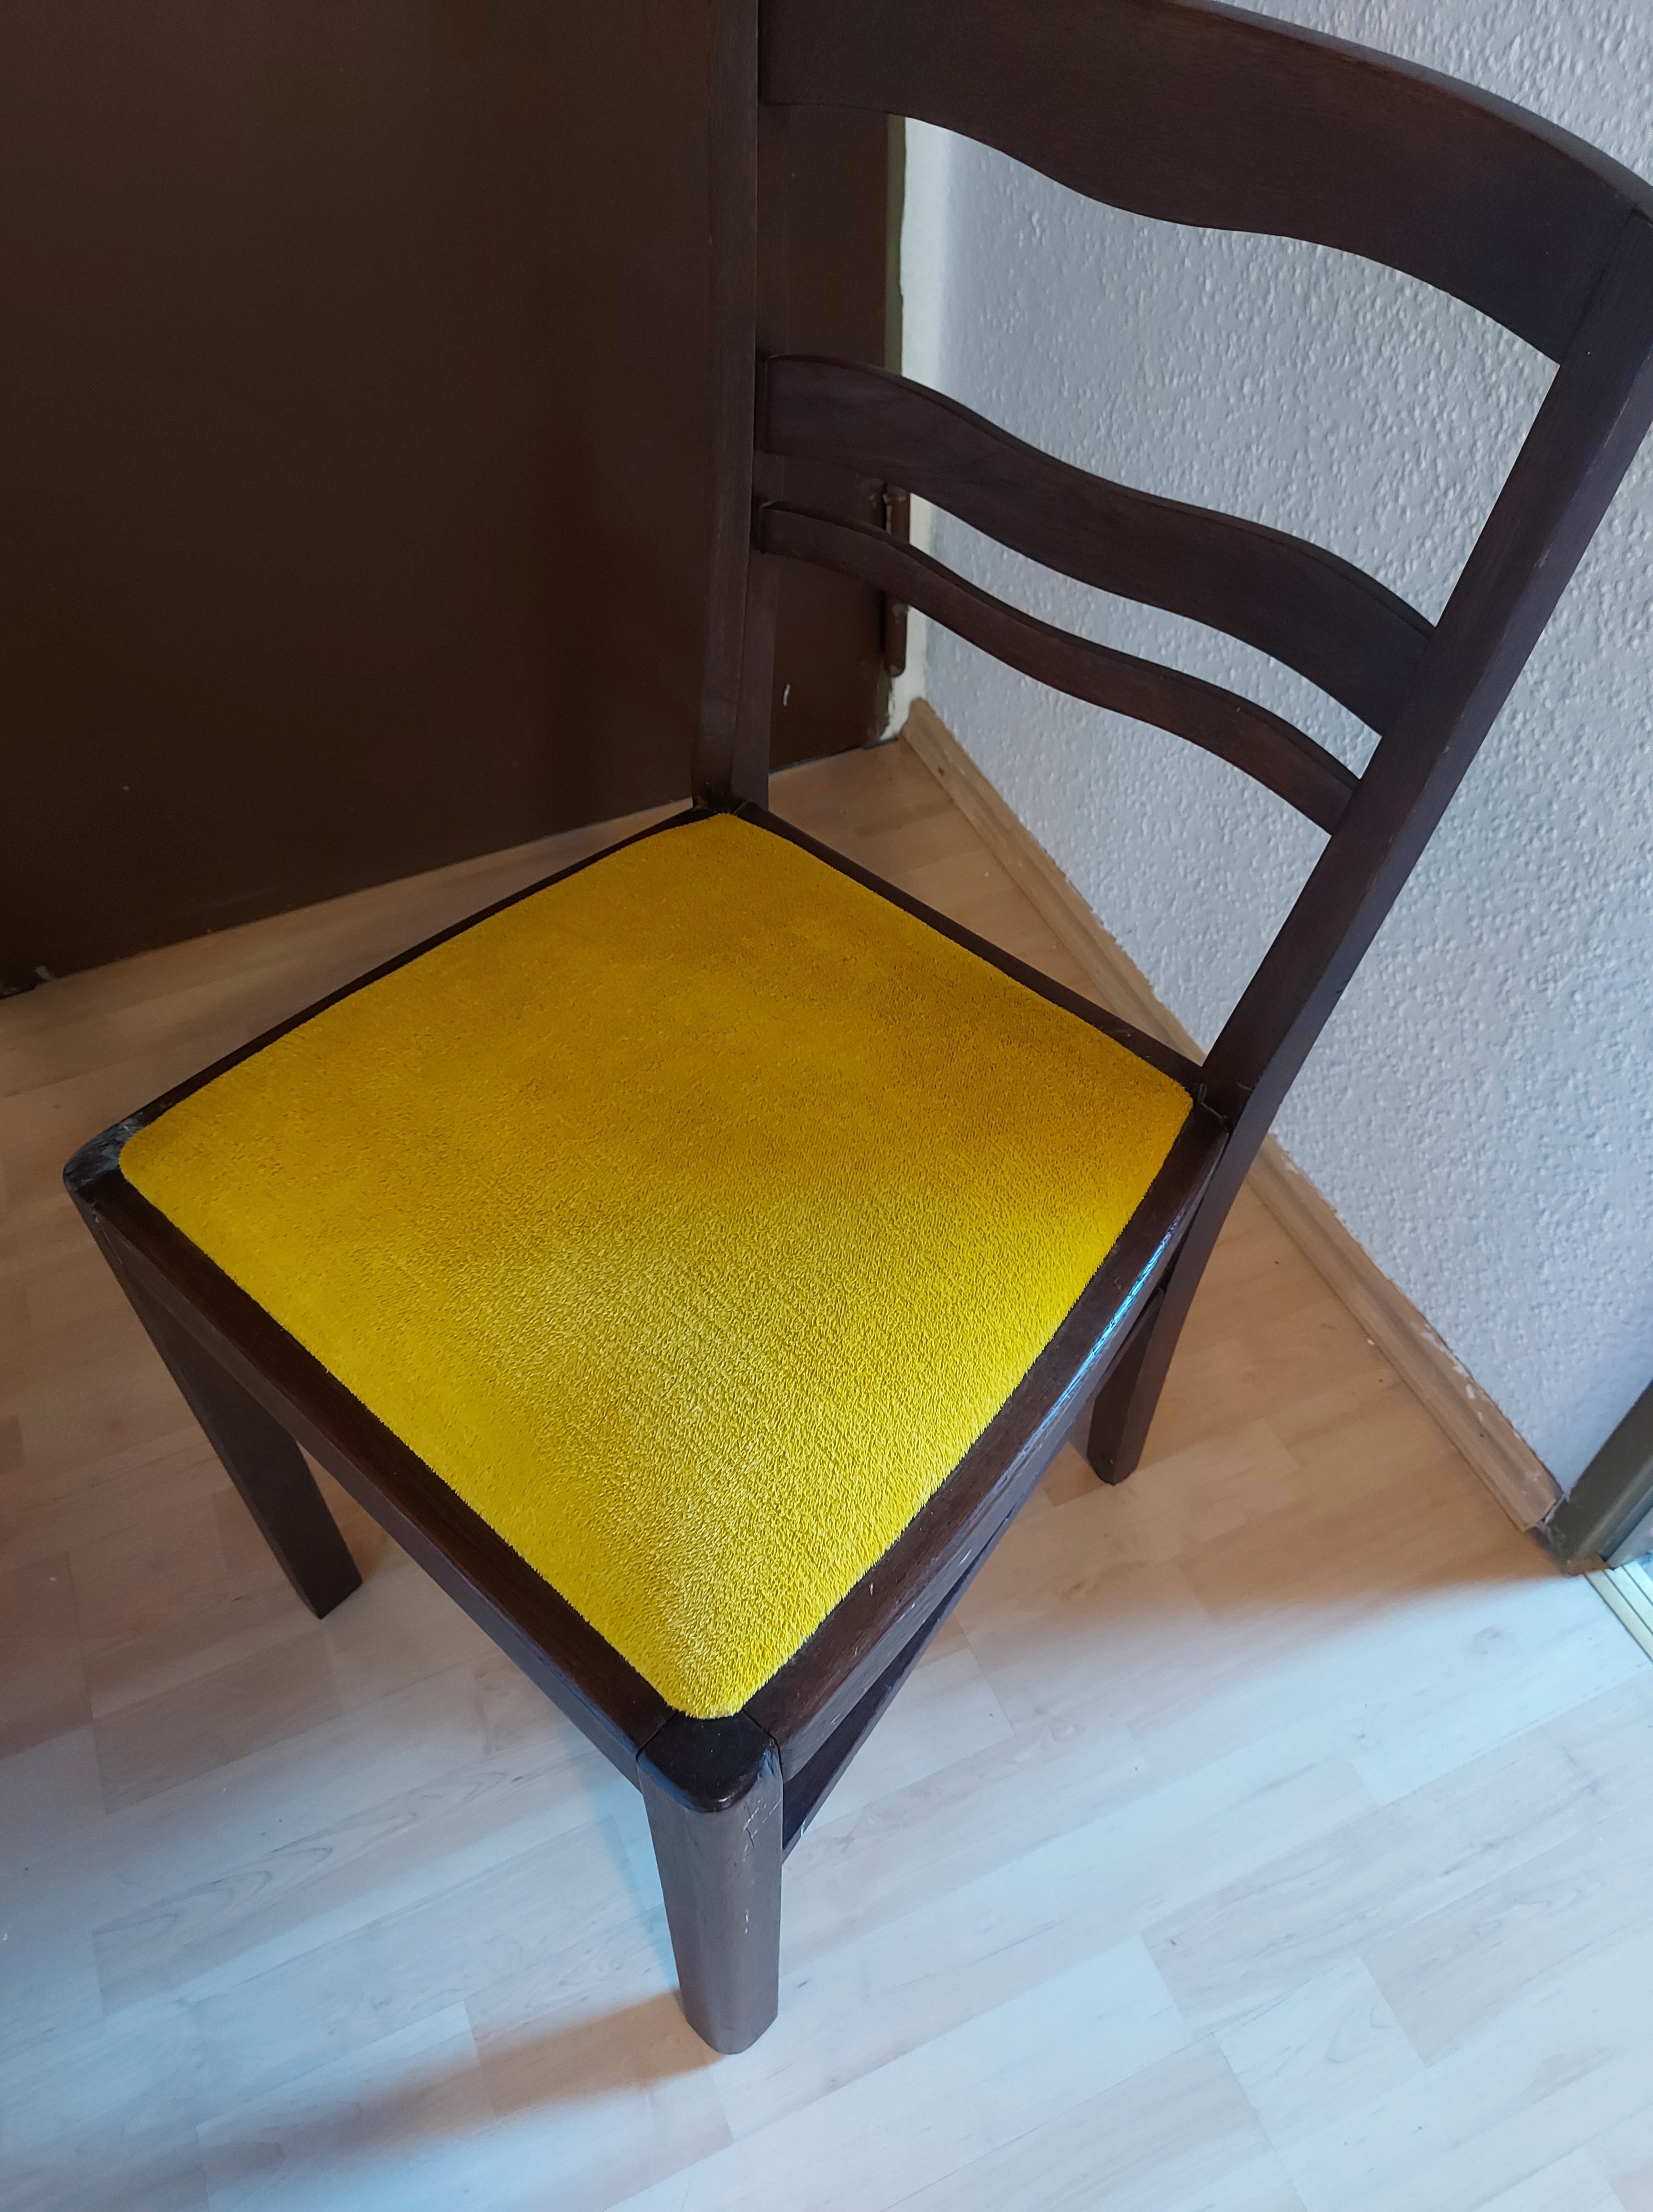 Stuhl Upcycling - Stuhlpolster färben